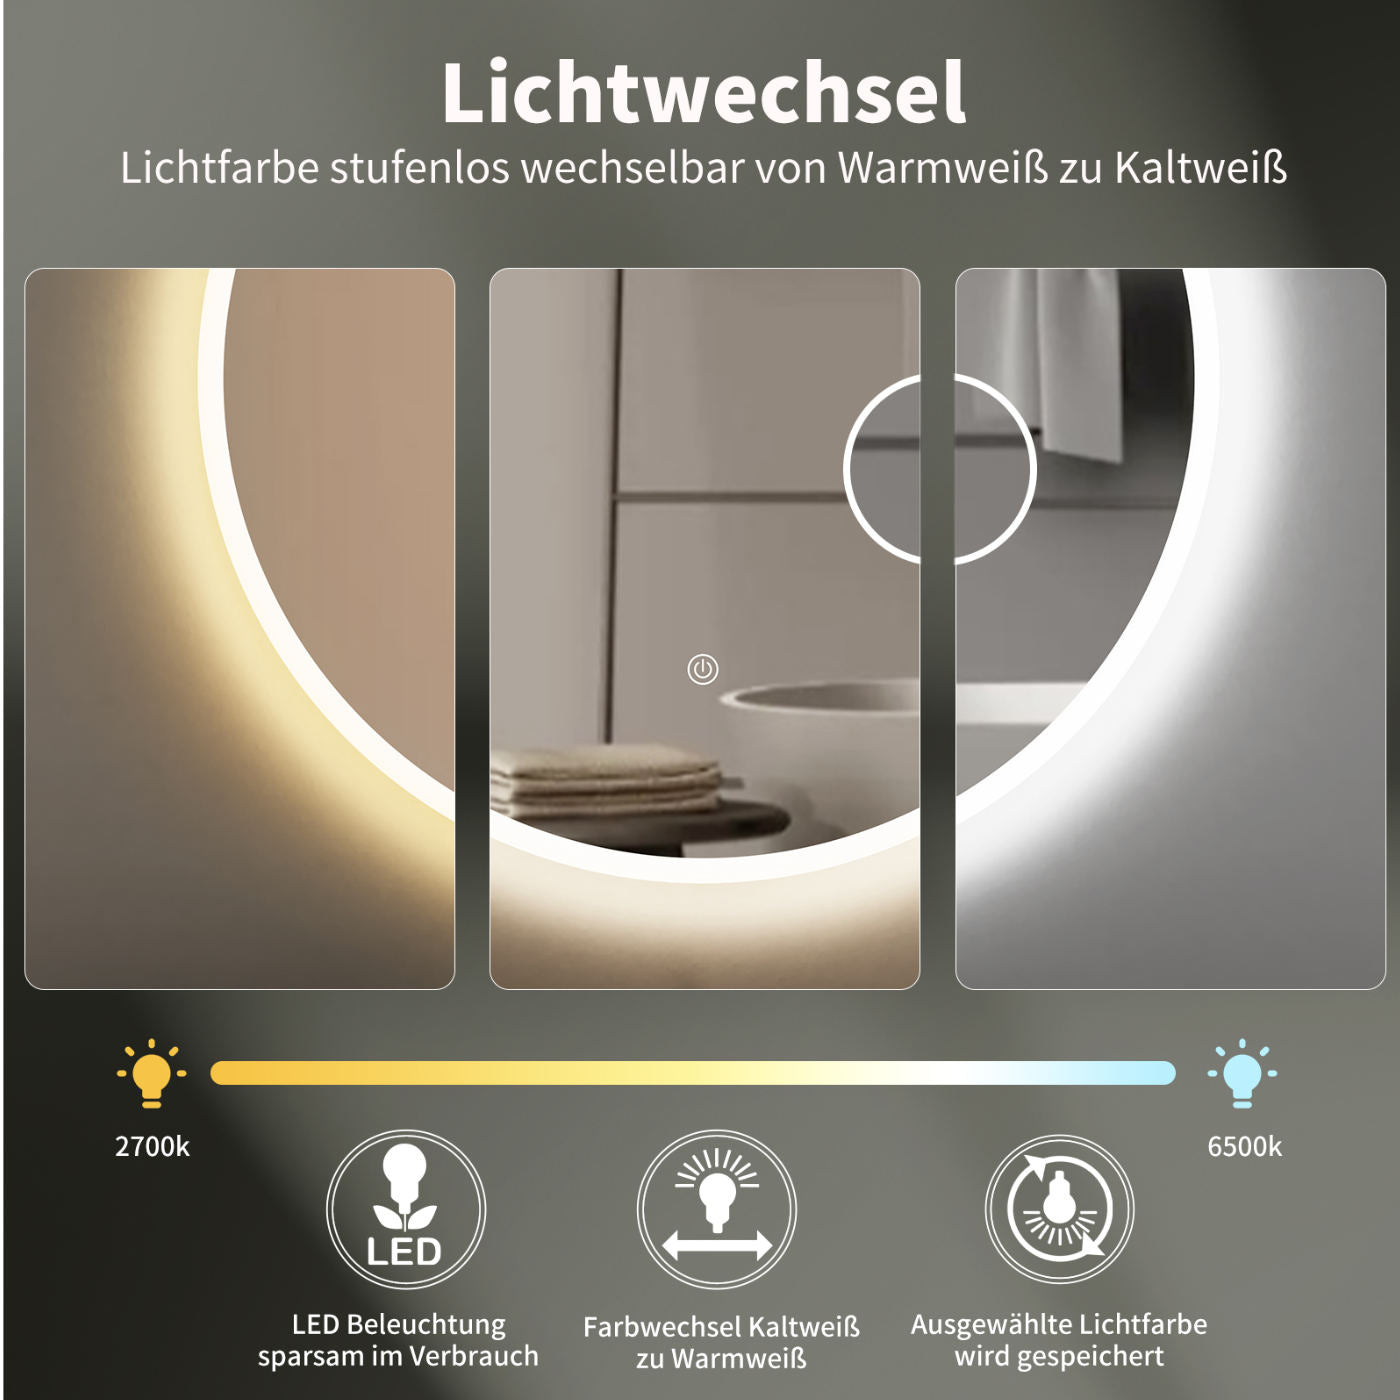 LED Badspiegel, design runder Badspiegel mit Beleuchtung, Integriert Kosmetikspiegel, Lichtwechsel